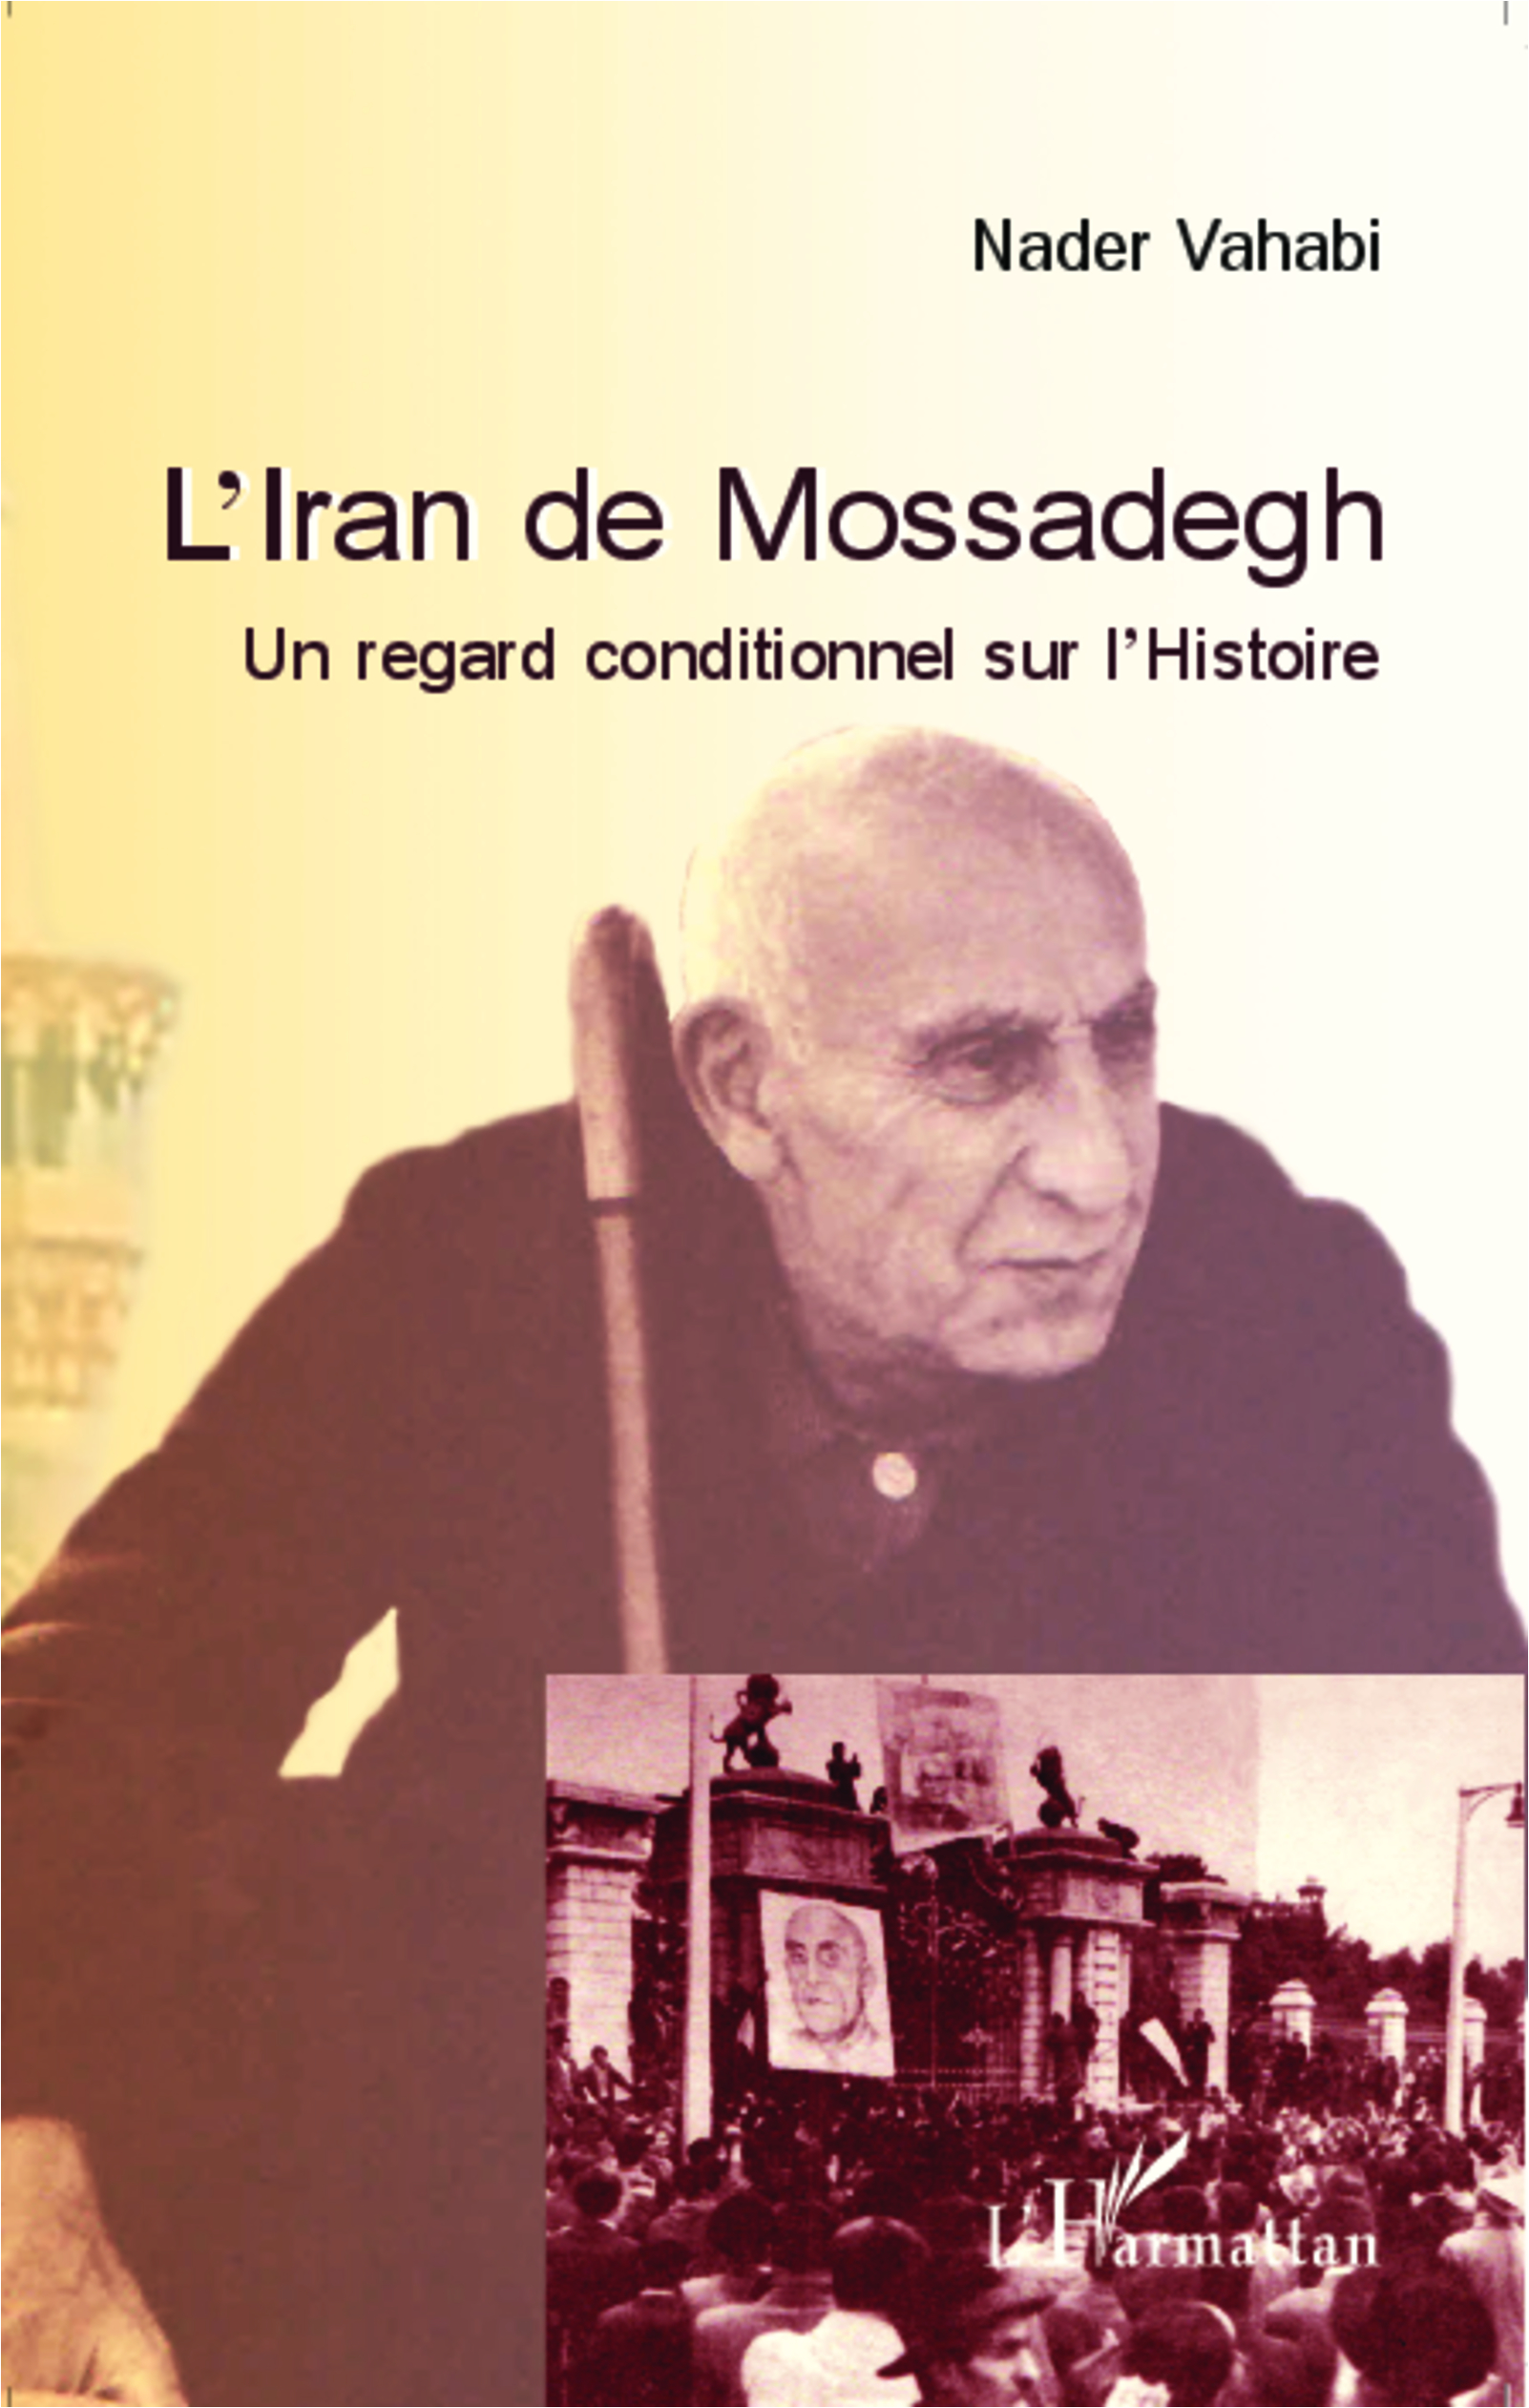 L'Iran de Mossadegh. Un regard conditionnel sur l'Histoire